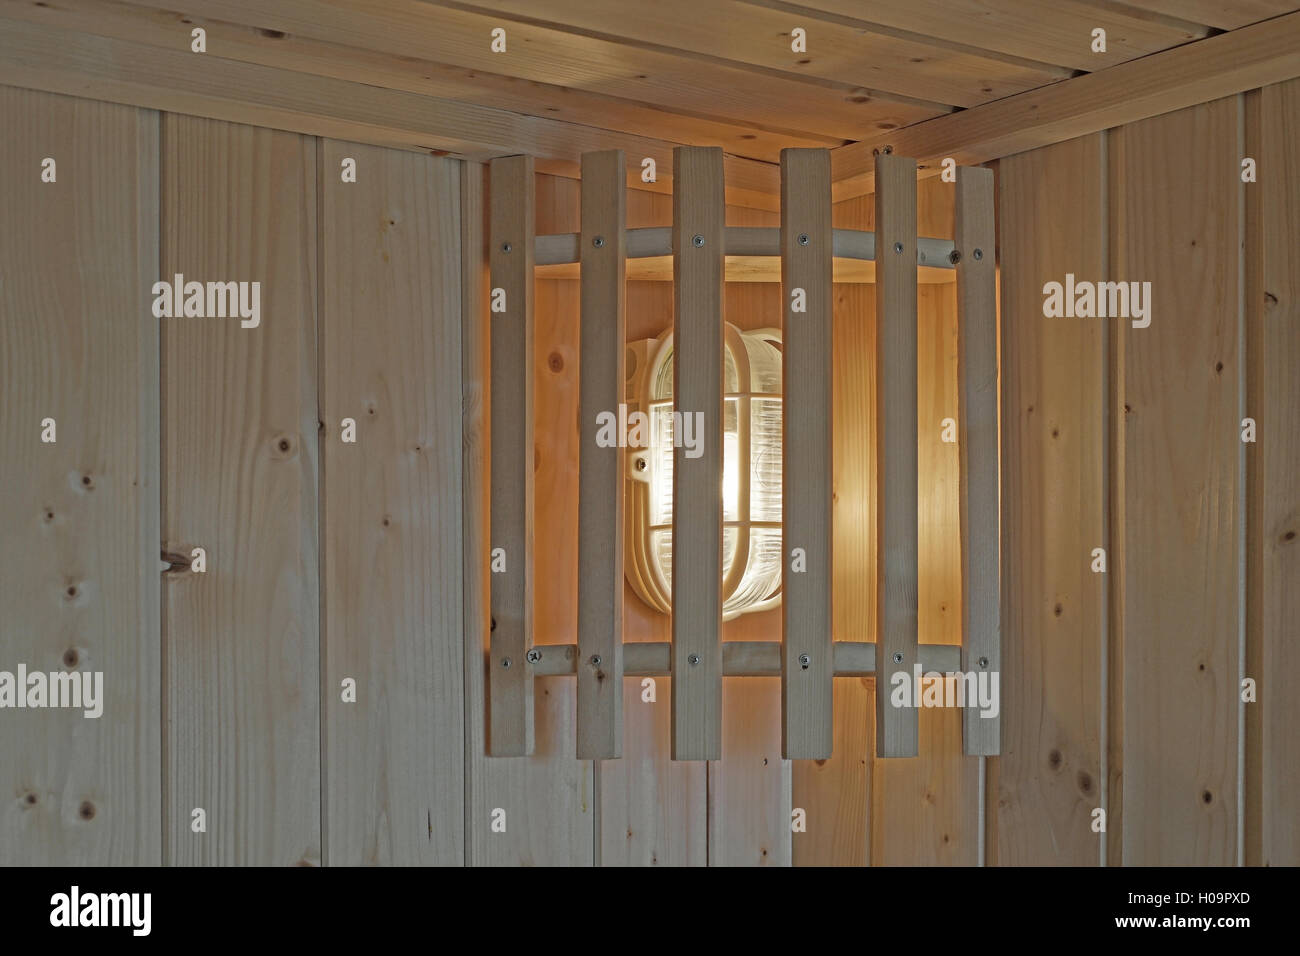 Lampada a parete in legno nella sala sauna Foto Stock